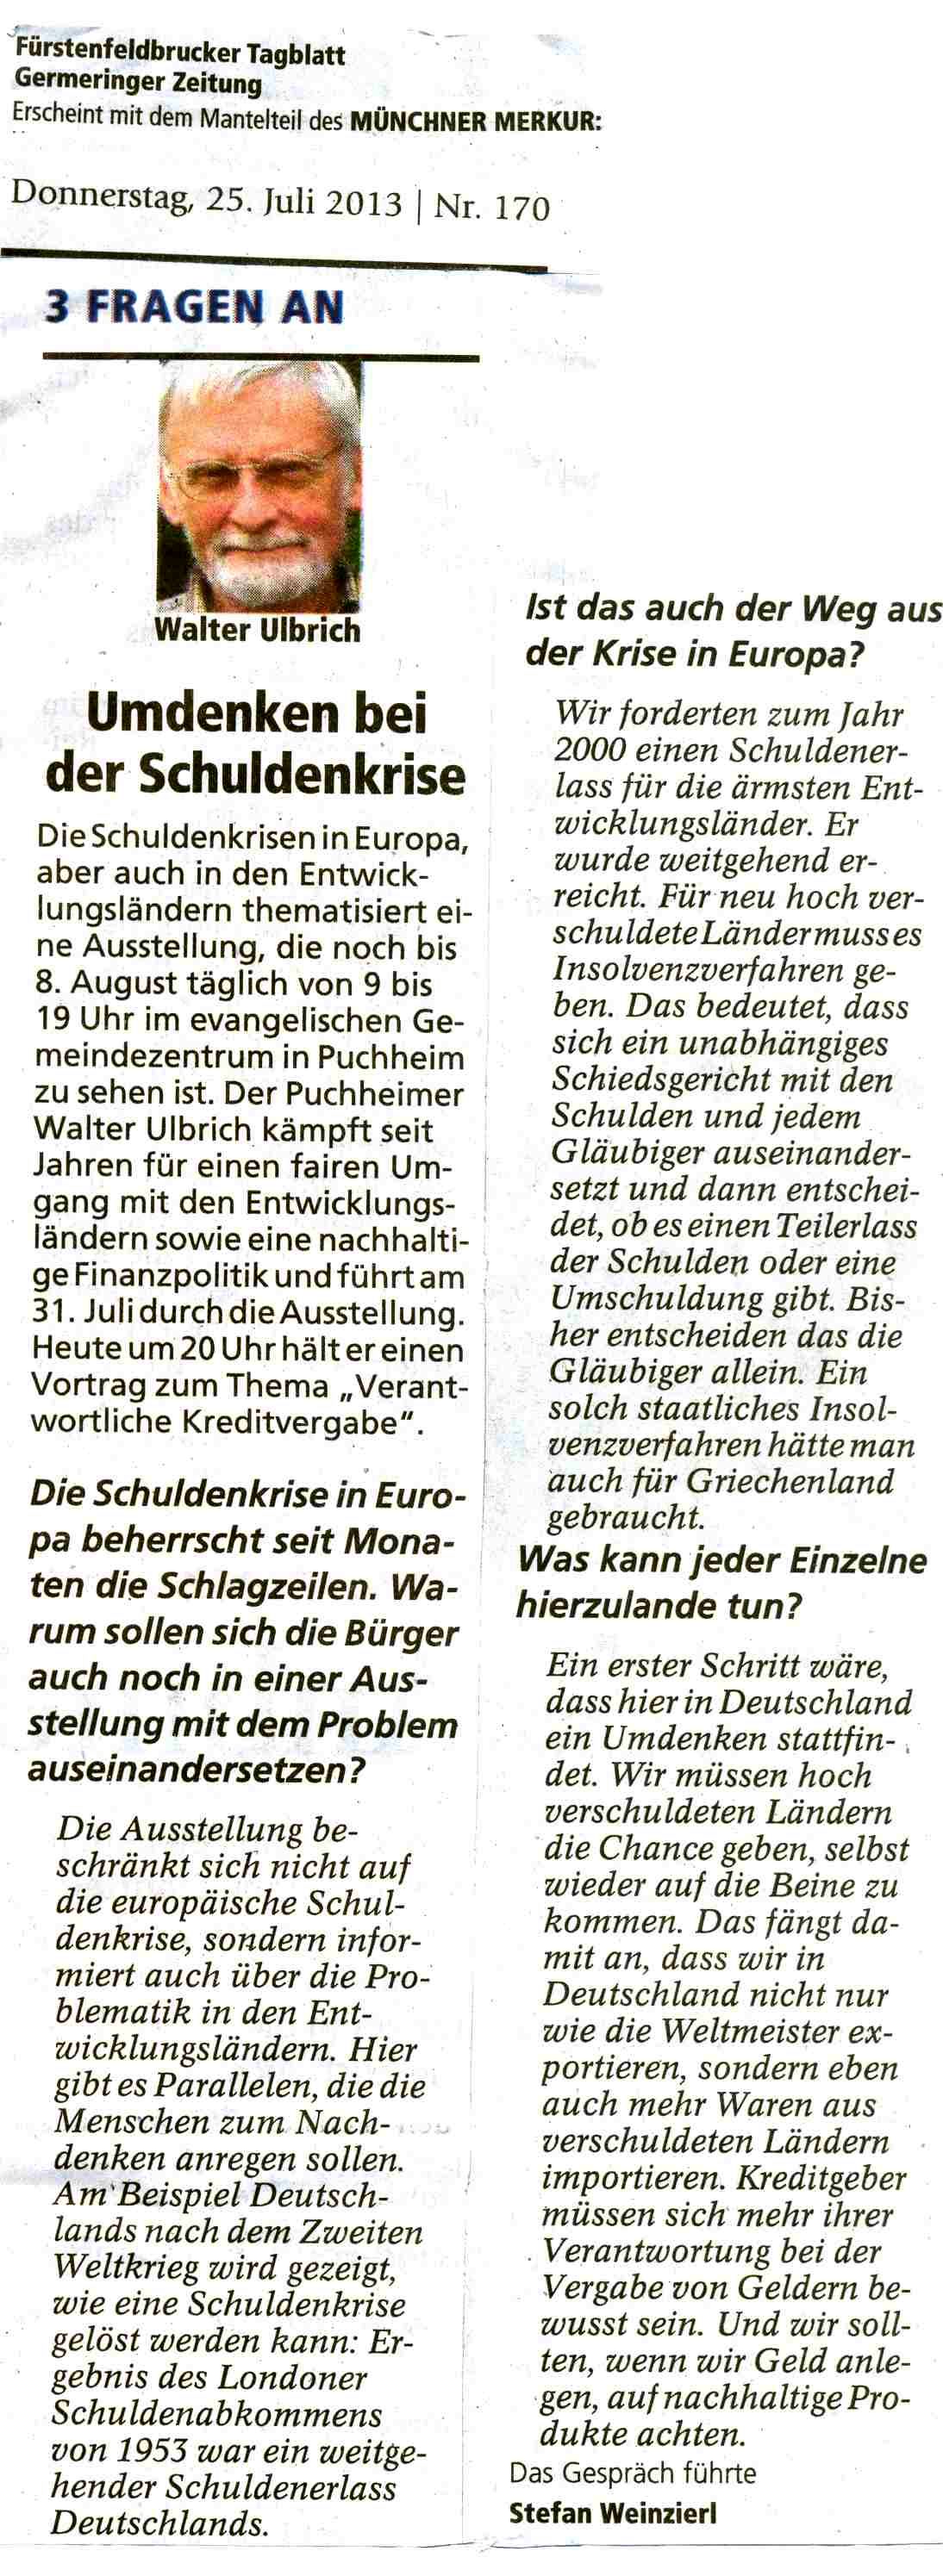 Tagblatt, 25.7.2013